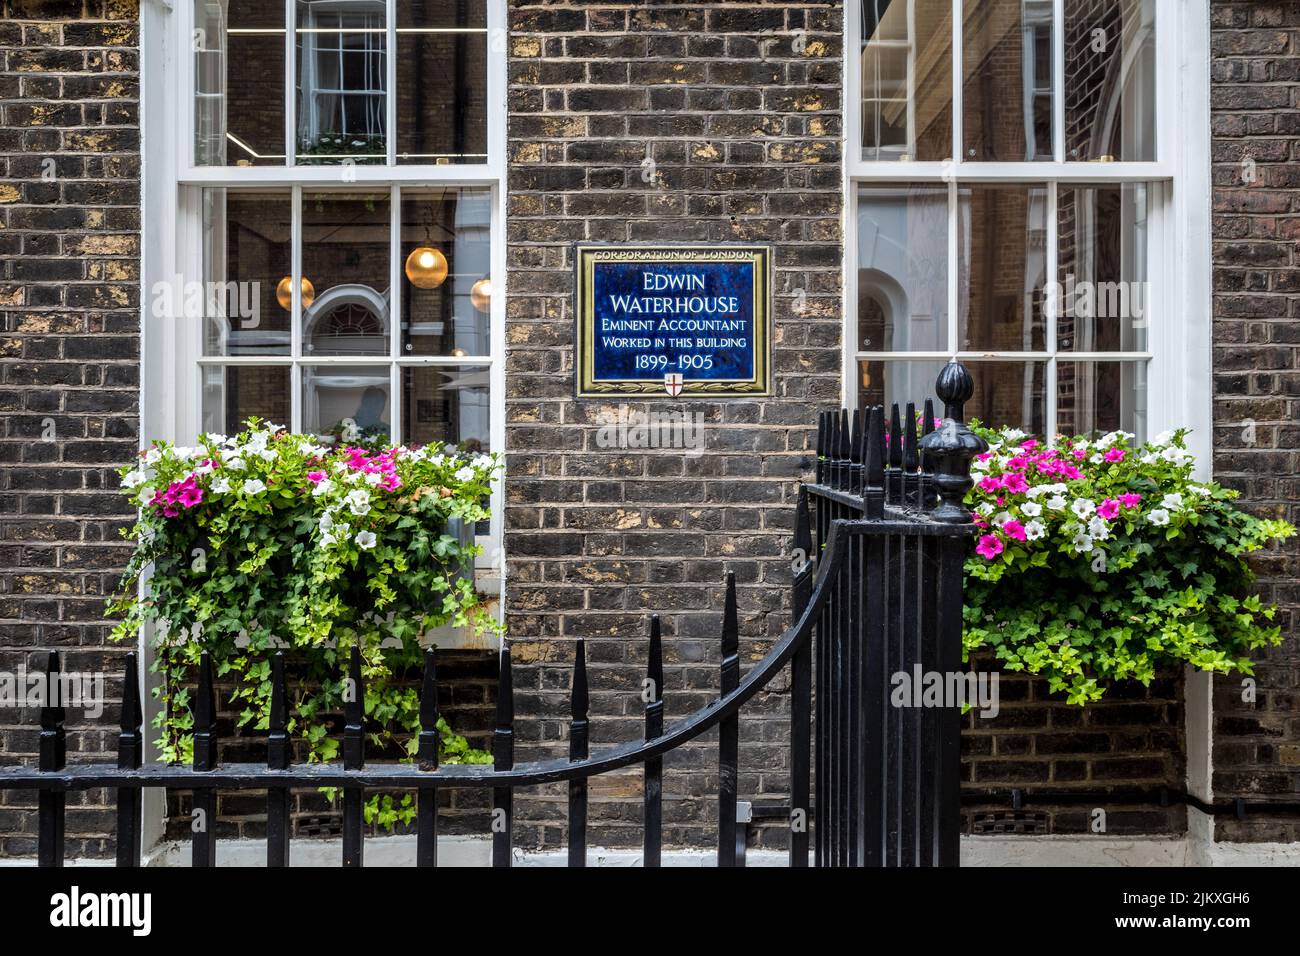 Blaue Plakette - Edwin Waterhouse in diesem Gebäude 1899-1905 arbeitete ein angesehener Buchhalter, der sich am Fredericks Place London befindet. Stockfoto